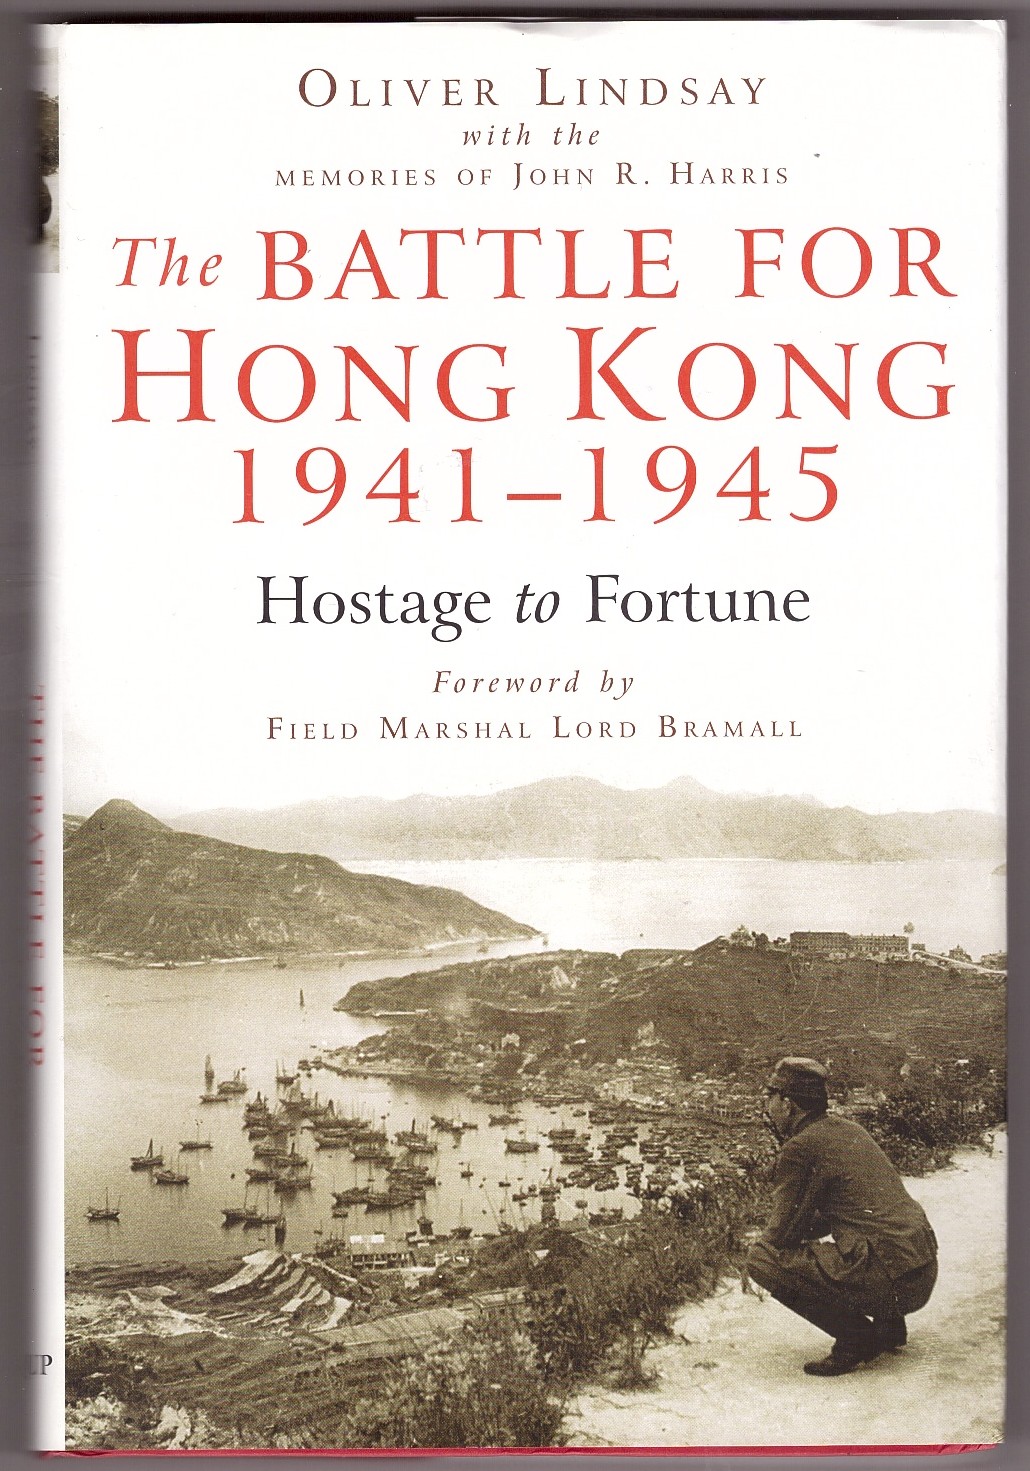 LINDSAY, OLIVER - The Battle for Hong Kong, 1941